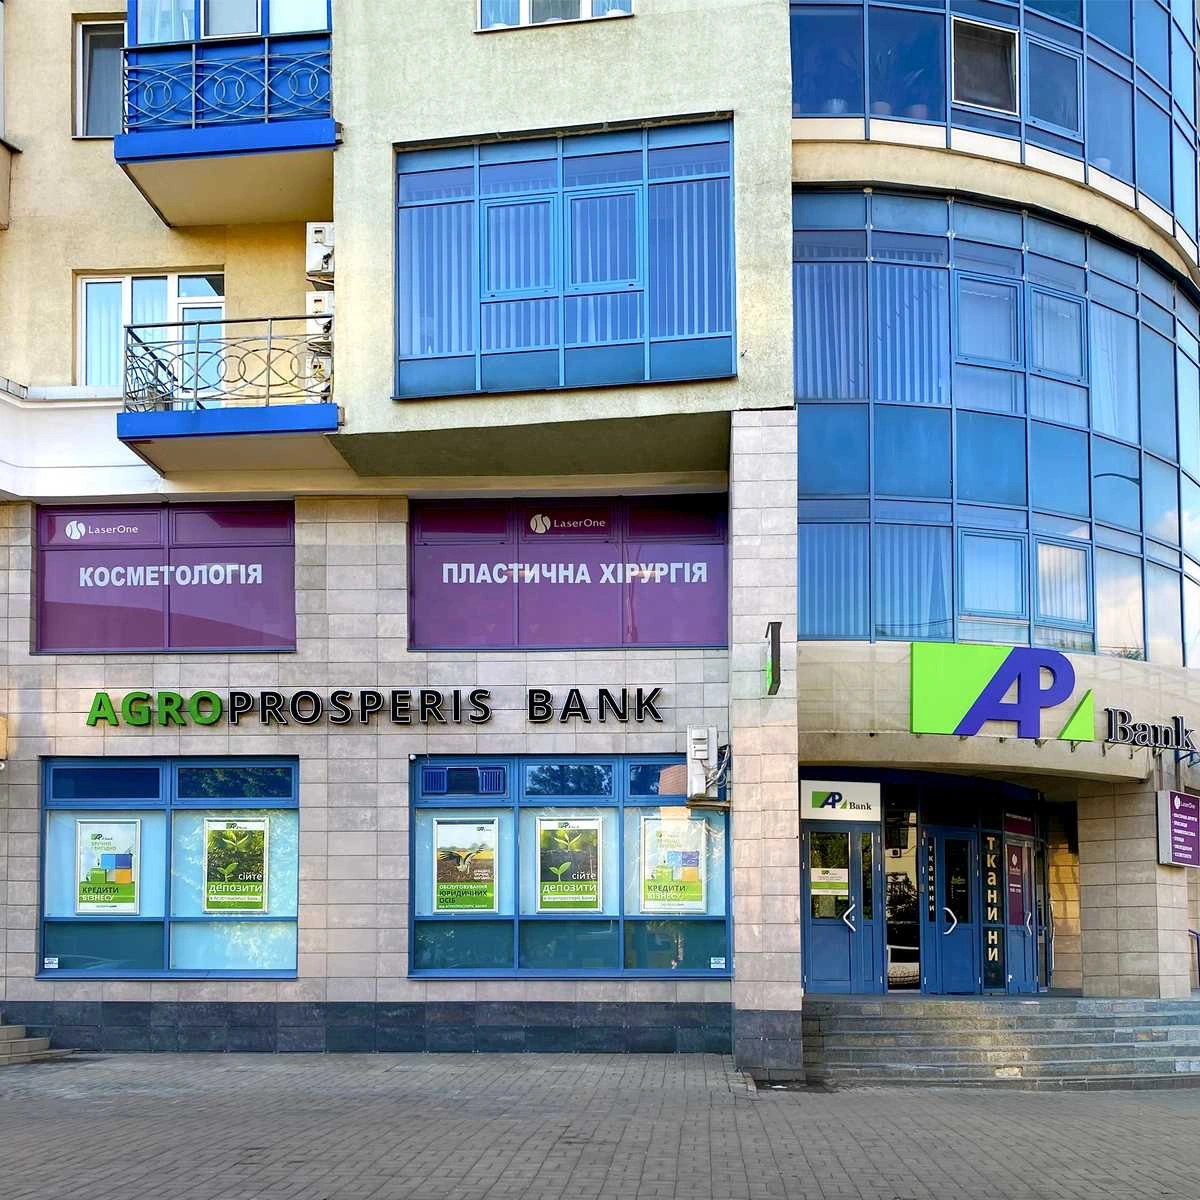 Агропросперіс Банк відкрив ще одне відділення у Києві біля м. Печерська